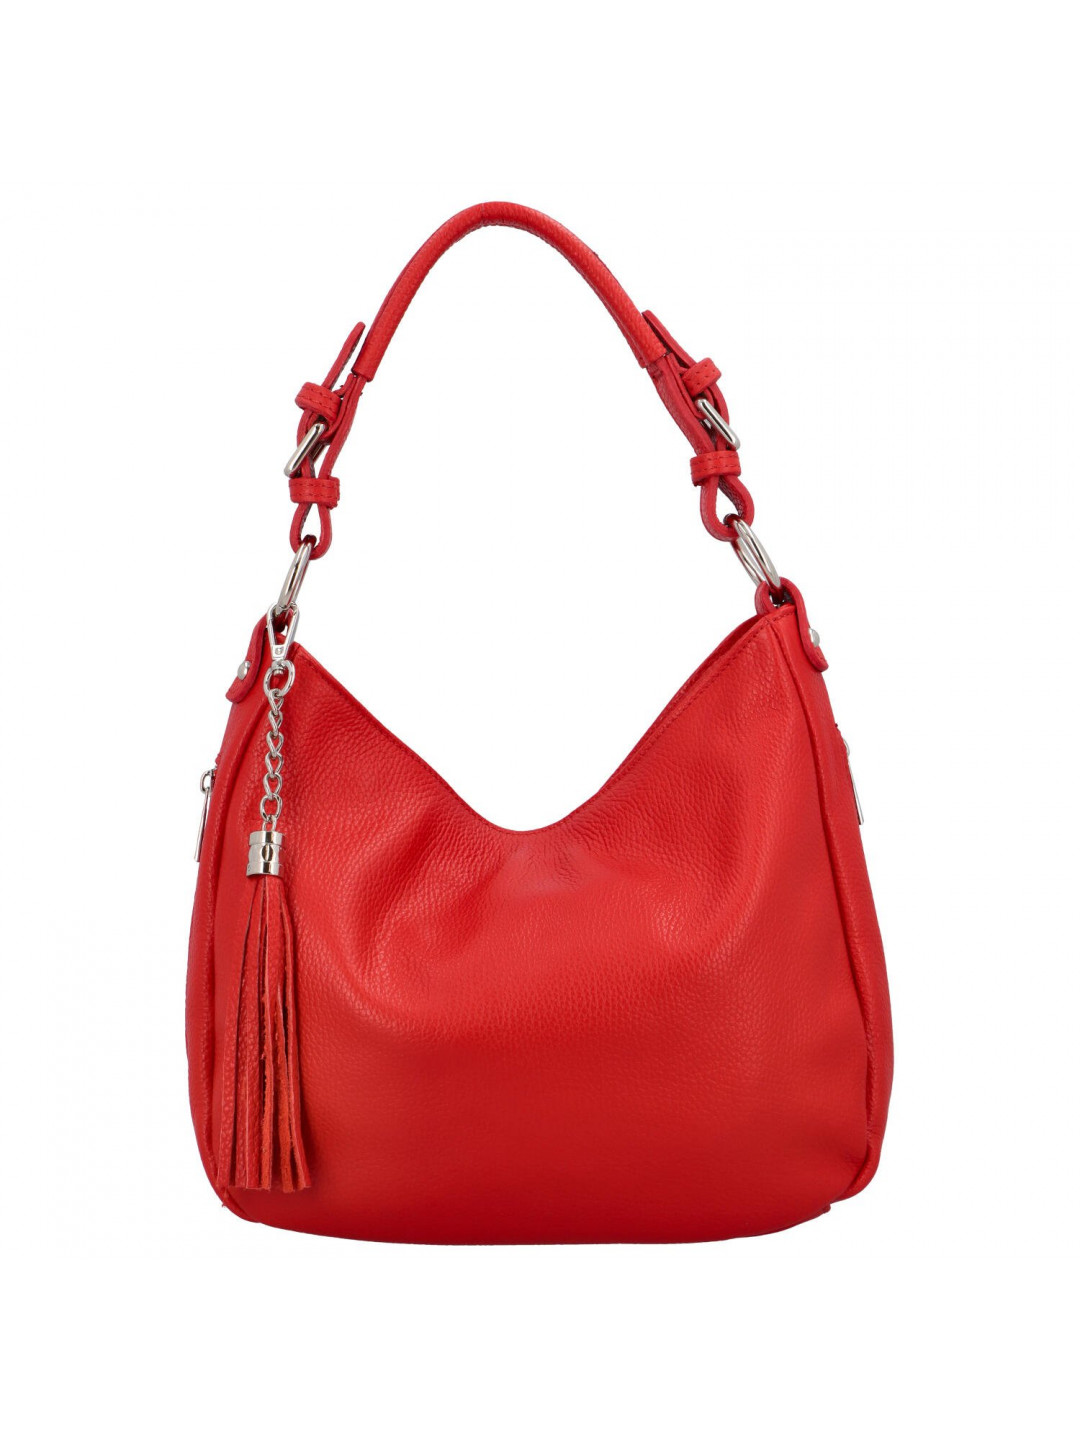 Dámská kožená kabelka přes rameno červená – Delami Fineska